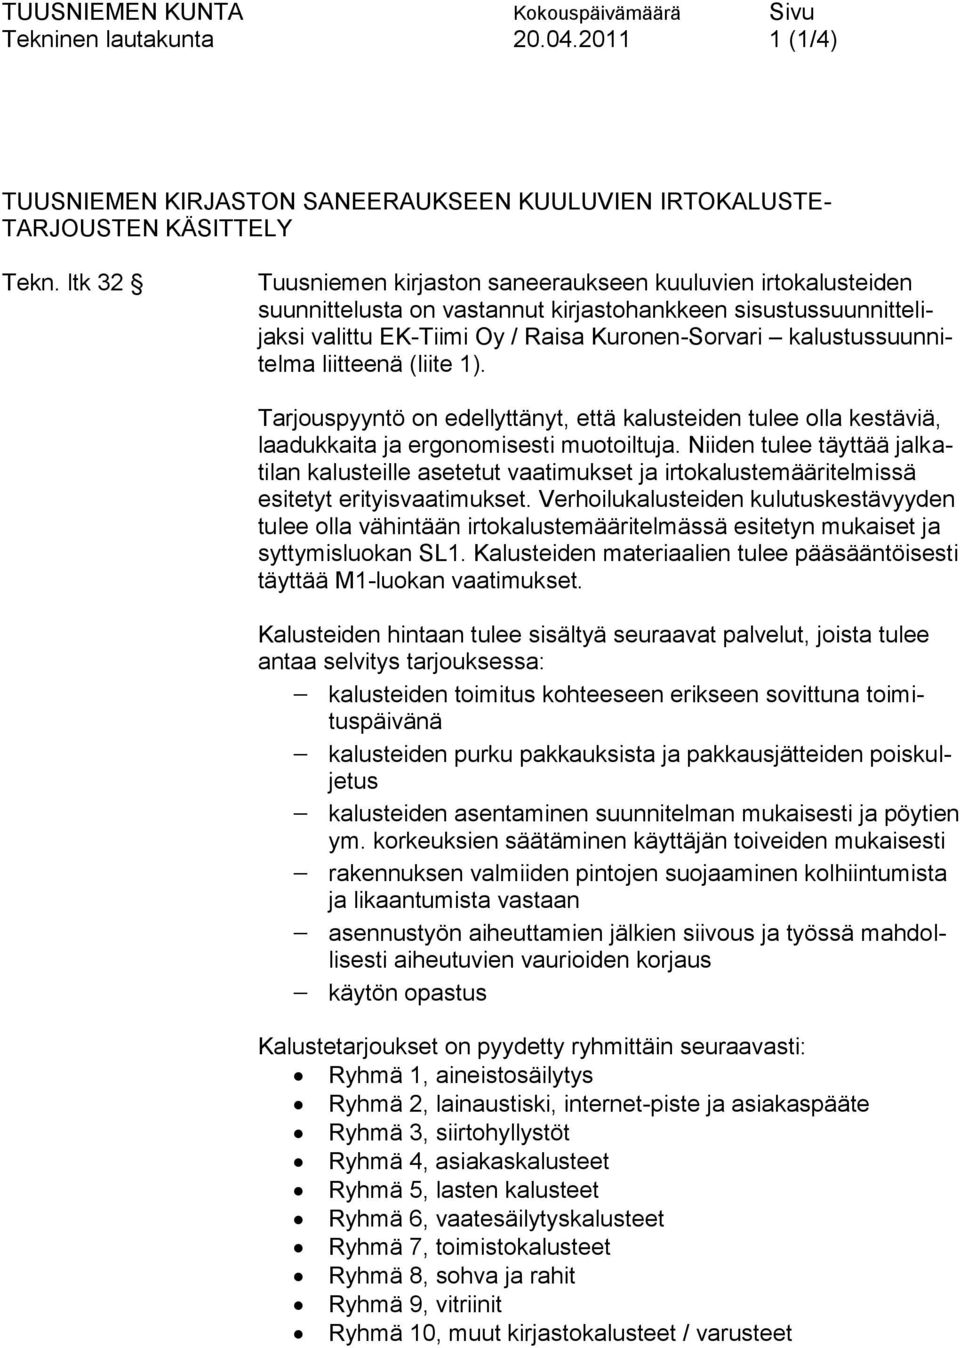 sisustussuunnittelijaksi valittu EK-Tiimi Oy / Raisa Kuronen-Sorvari kalustussuunnitelma liitteenä (liite 1).